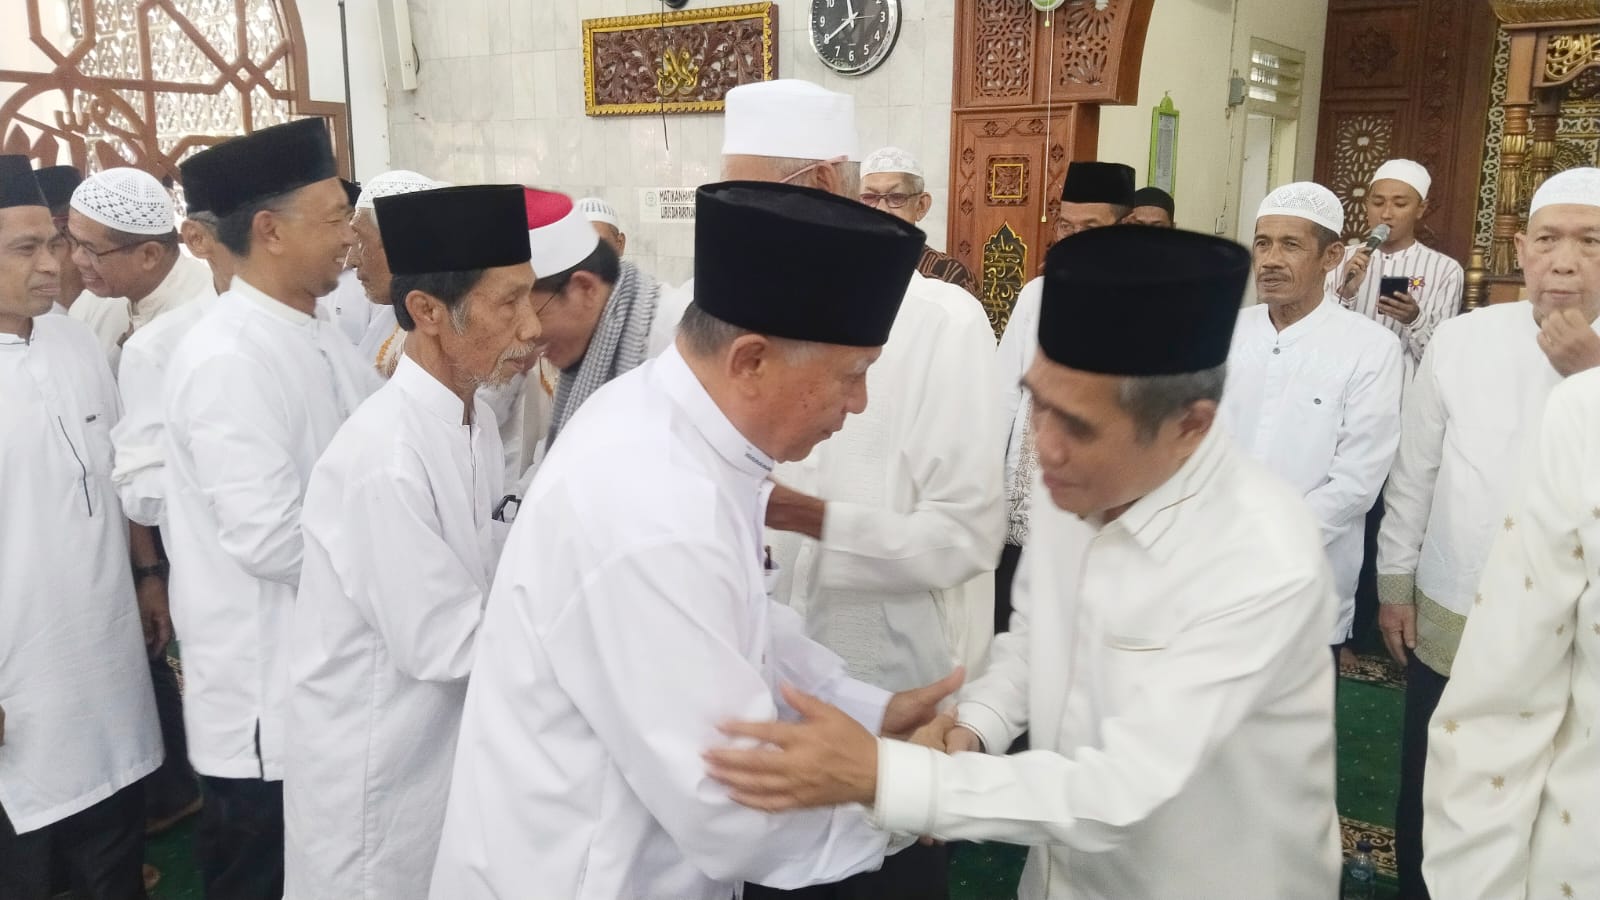 Wabup Ogan Ilir Hadiri Sedekah Haji Bersama Jemaah Haji Asal Tanjung Batu, Ini Pesannya! 